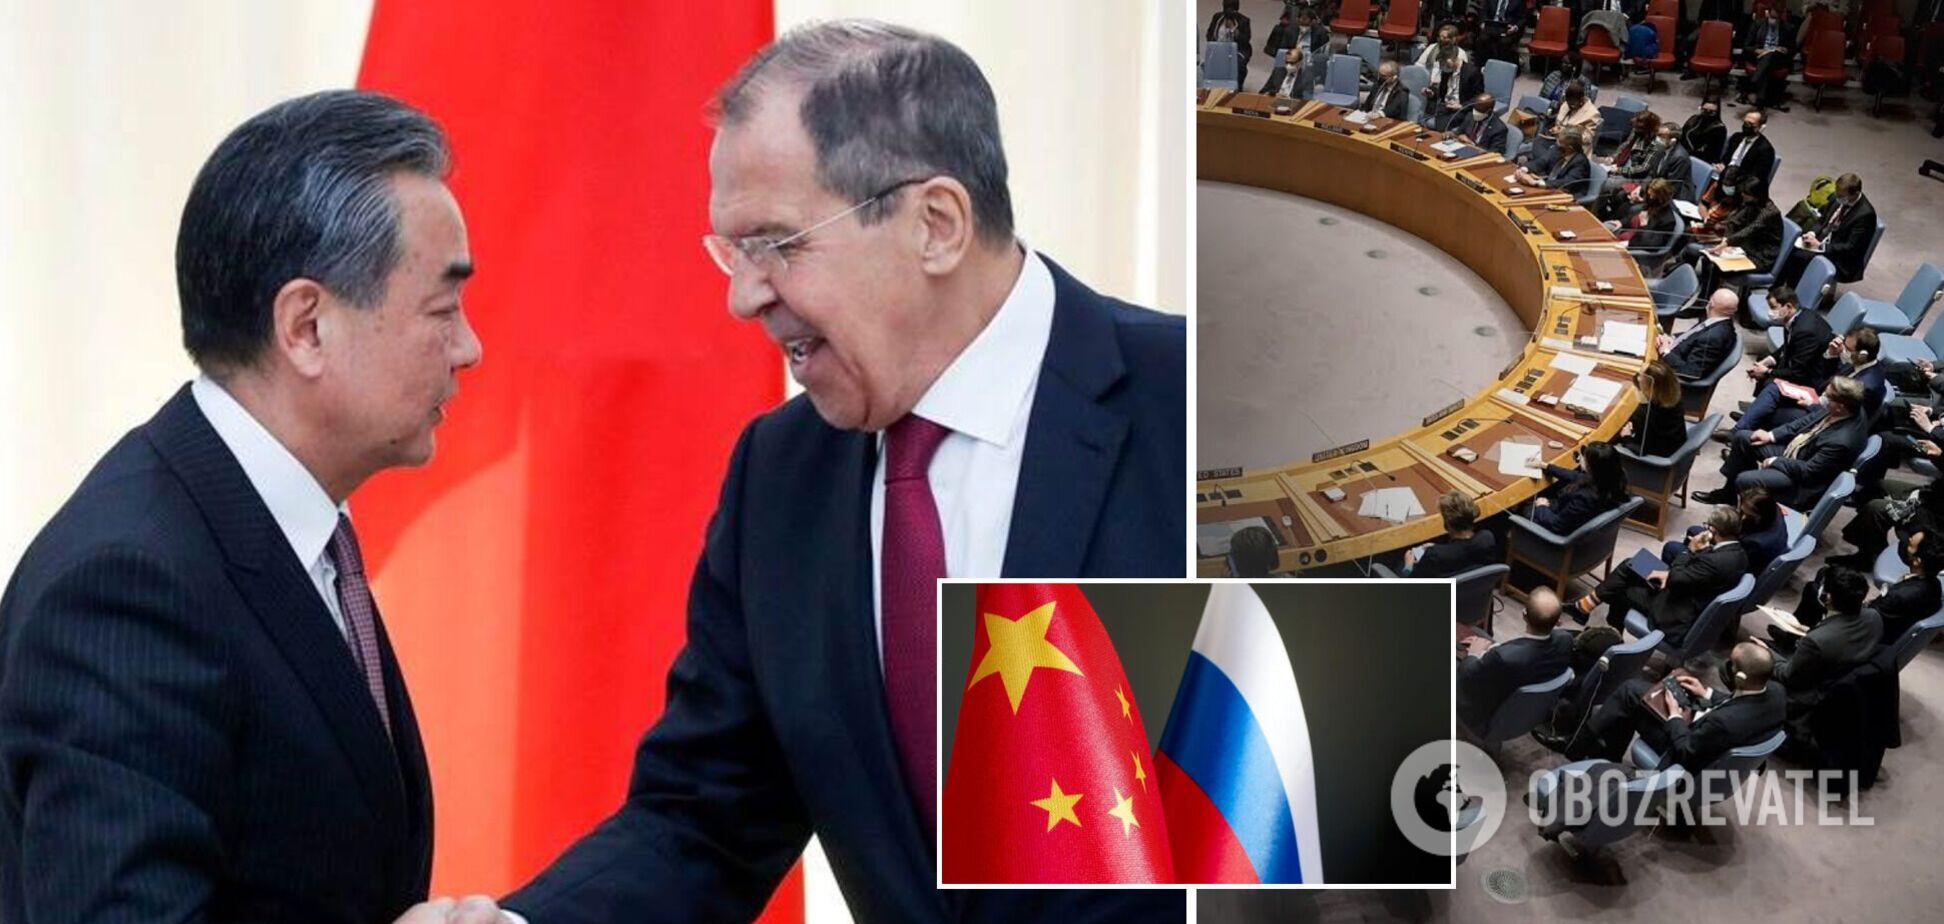 'Ніхто не може позбавити права': Китай виступив проти виключення Росії з Радбезу ООН 